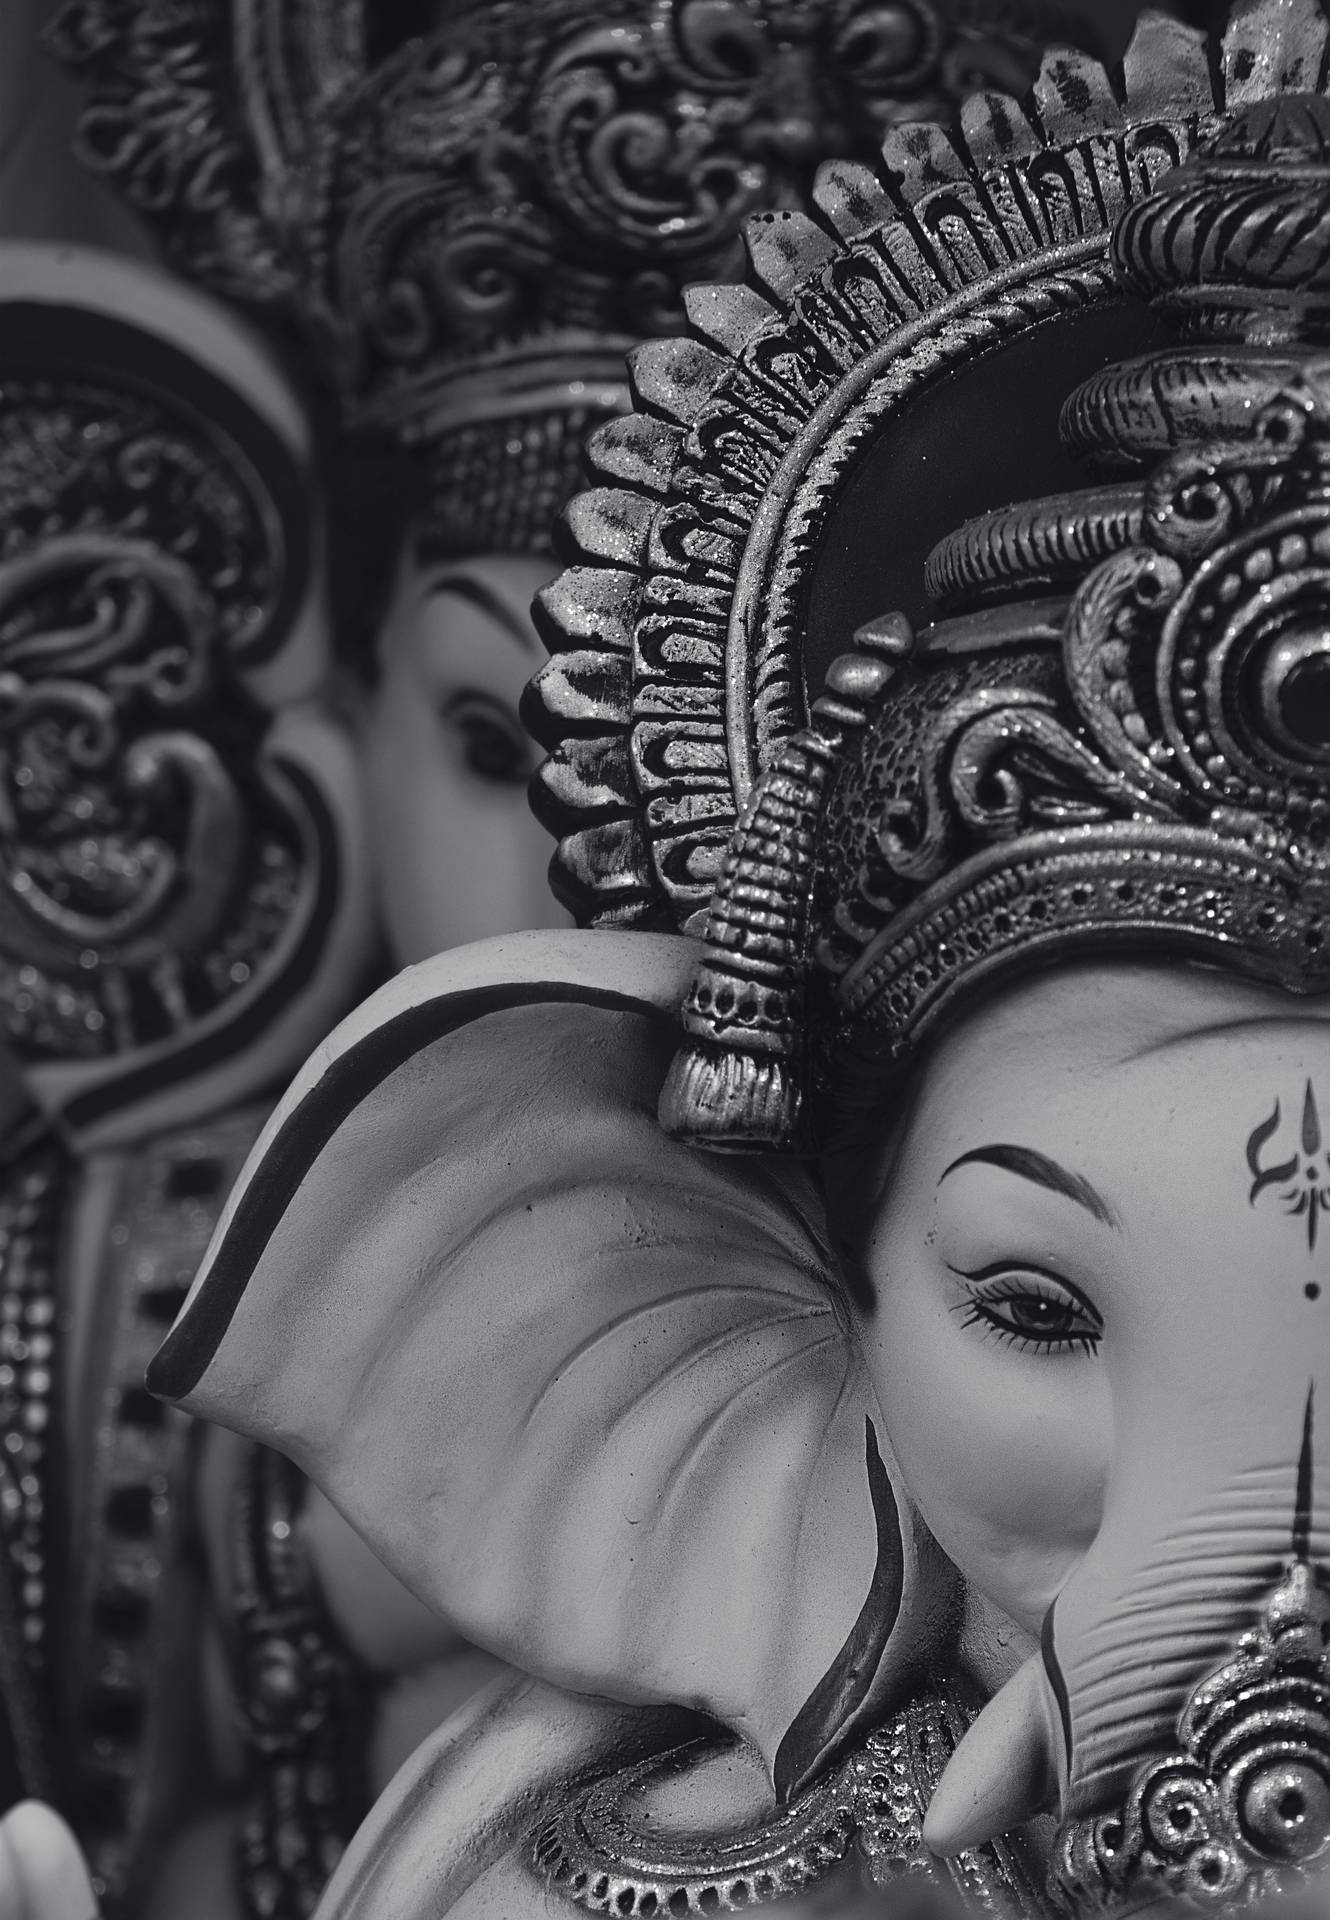 Divine Black and White Ganesha Illustration on Mobile Wallpaper